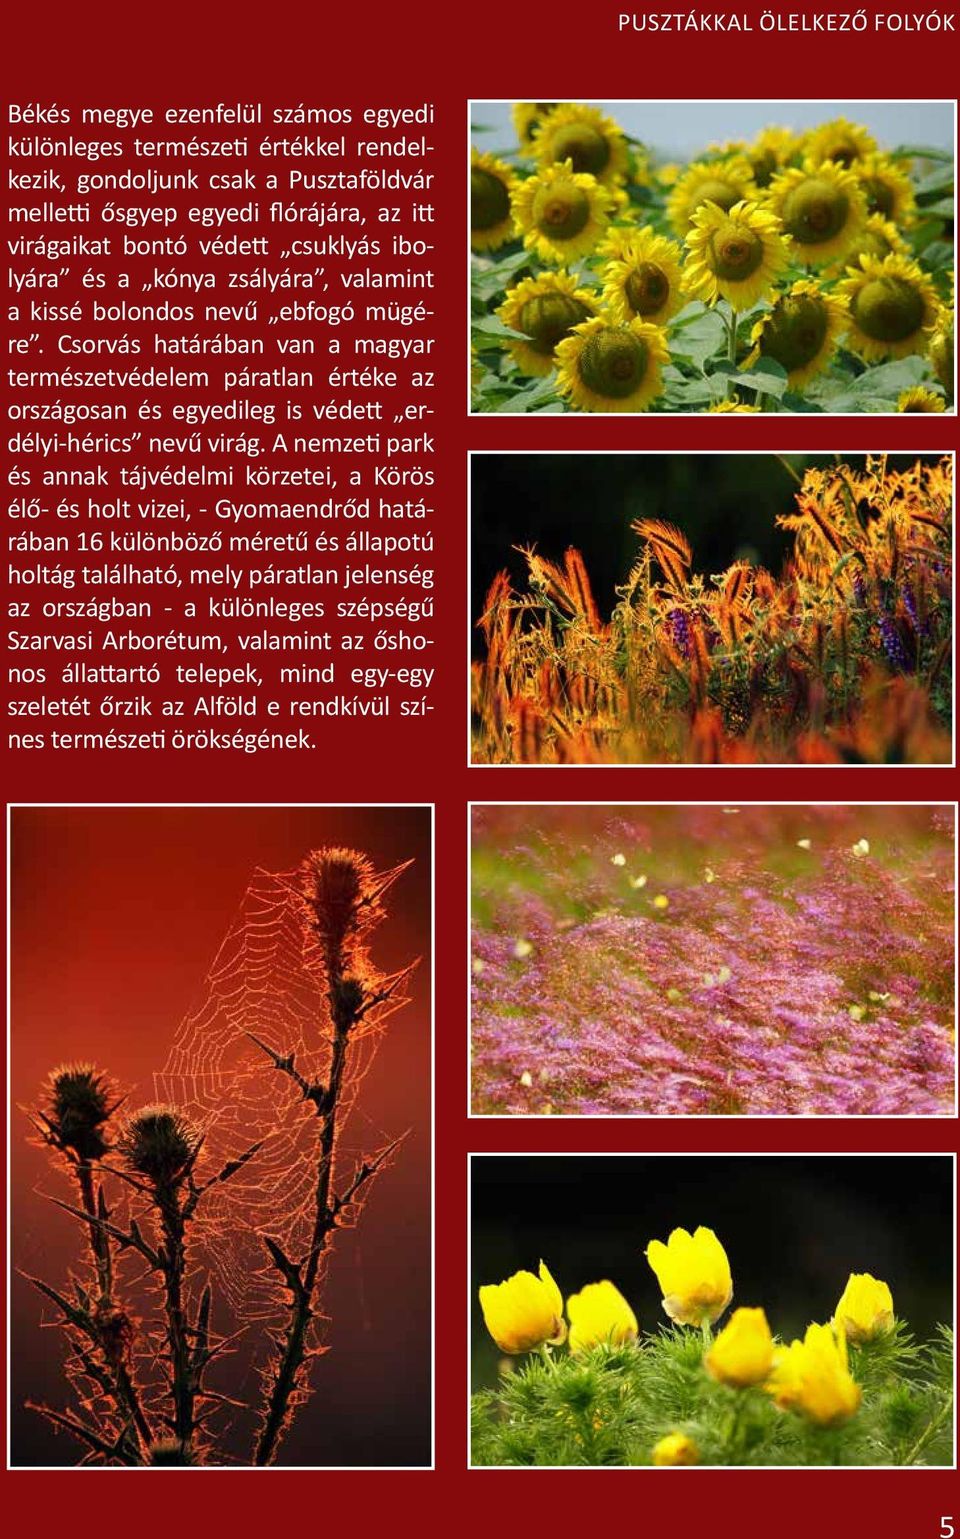 Csorvás határában van a magyar természetvédelem páratlan értéke az országosan és egyedileg is védett erdélyi-hérics nevű virág.